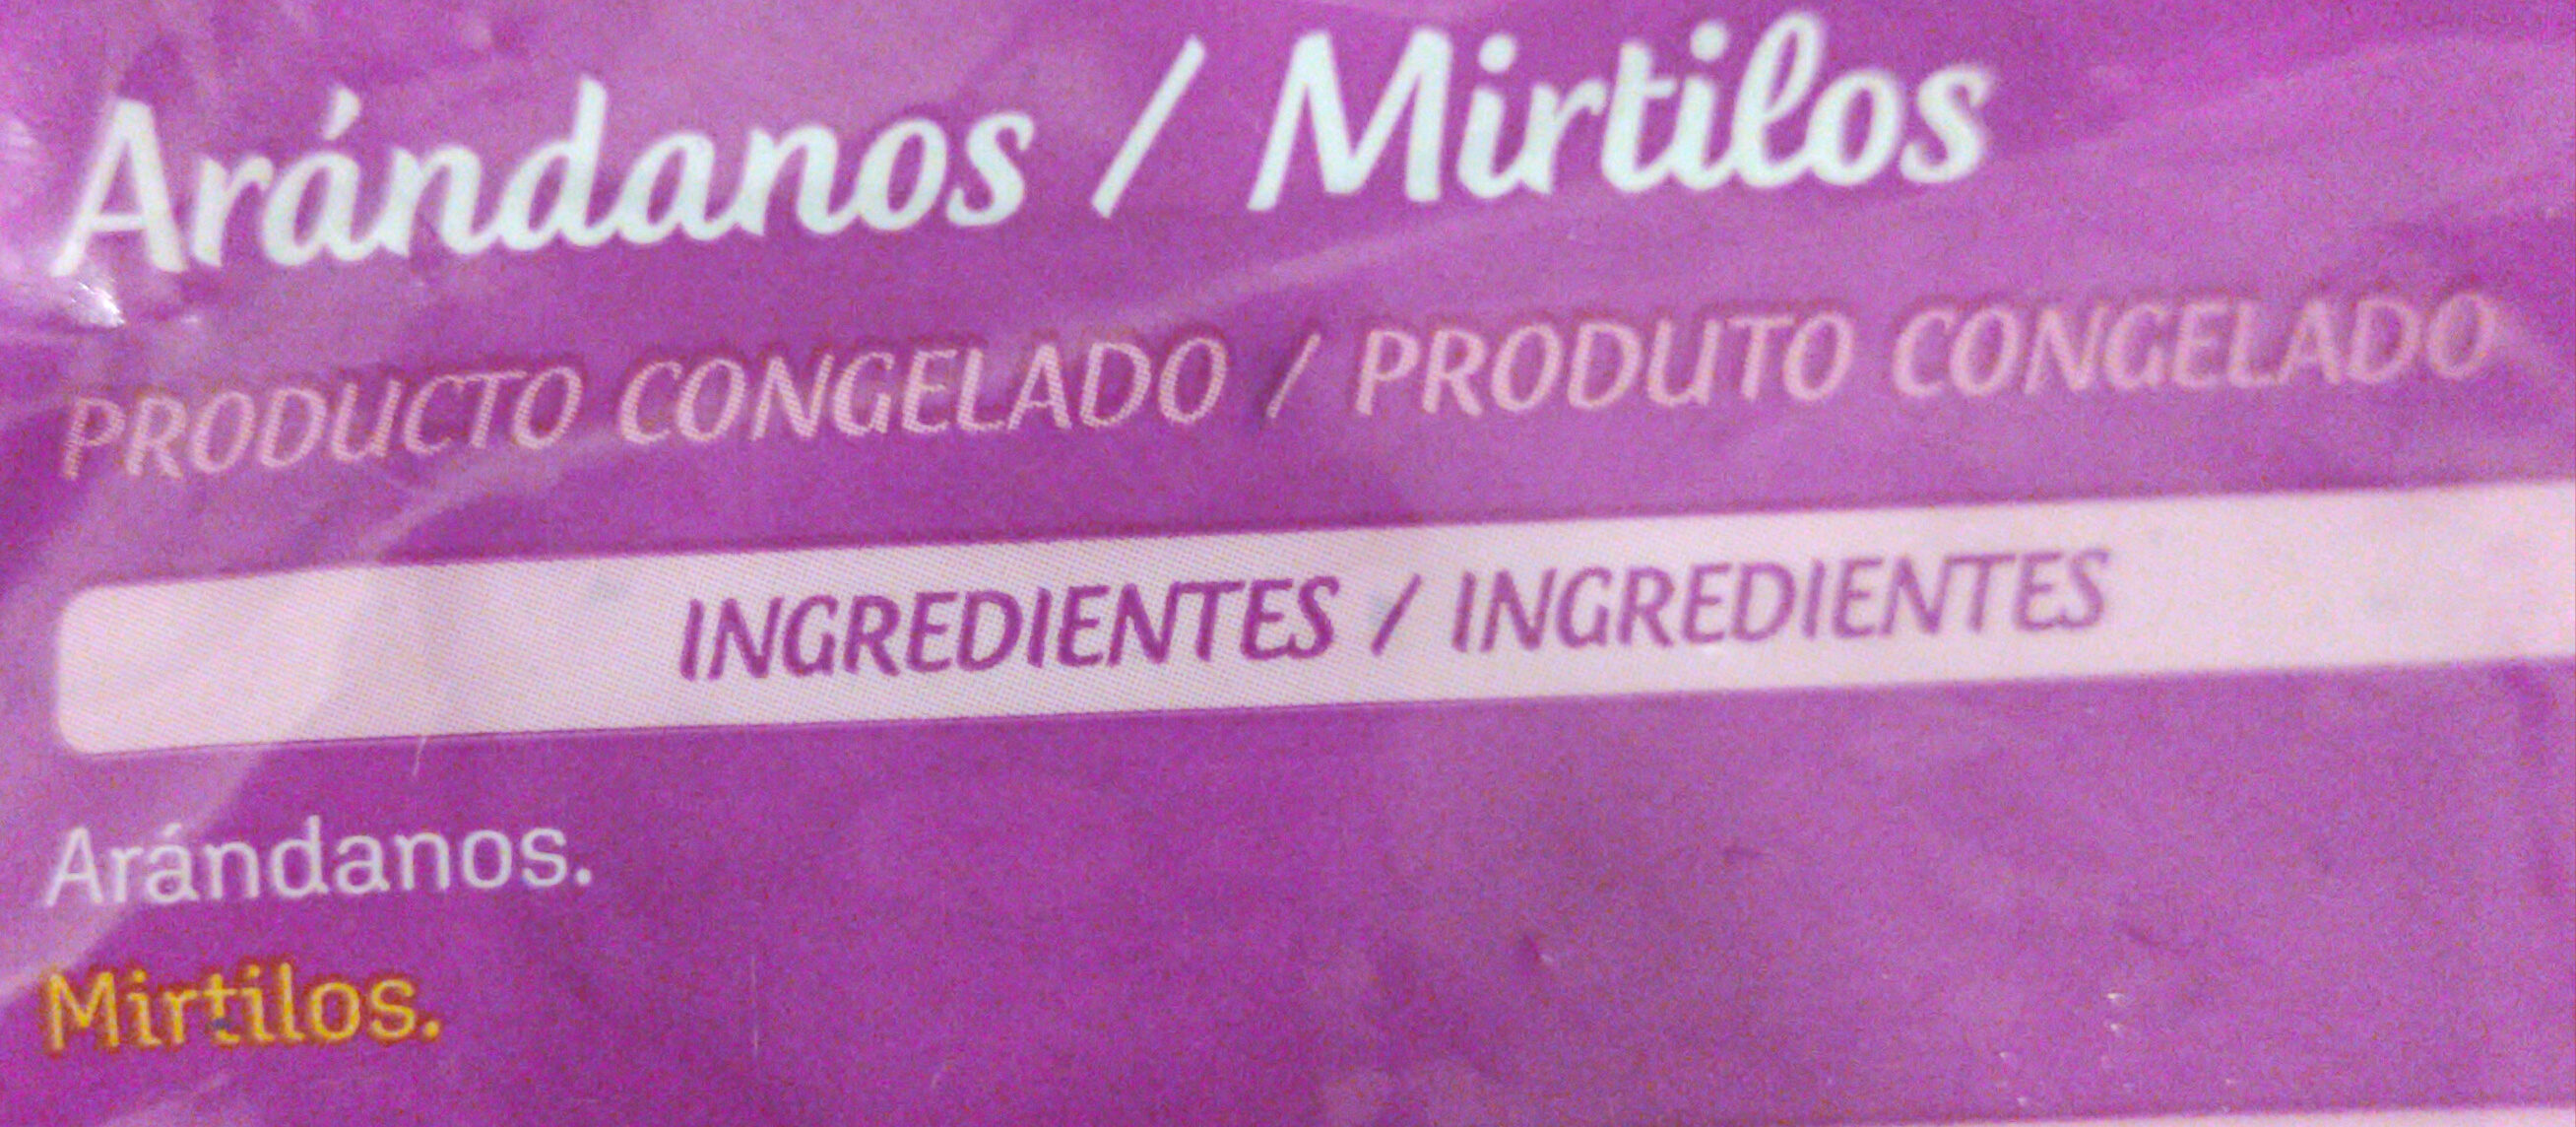 Arándanos - Ingredients - es